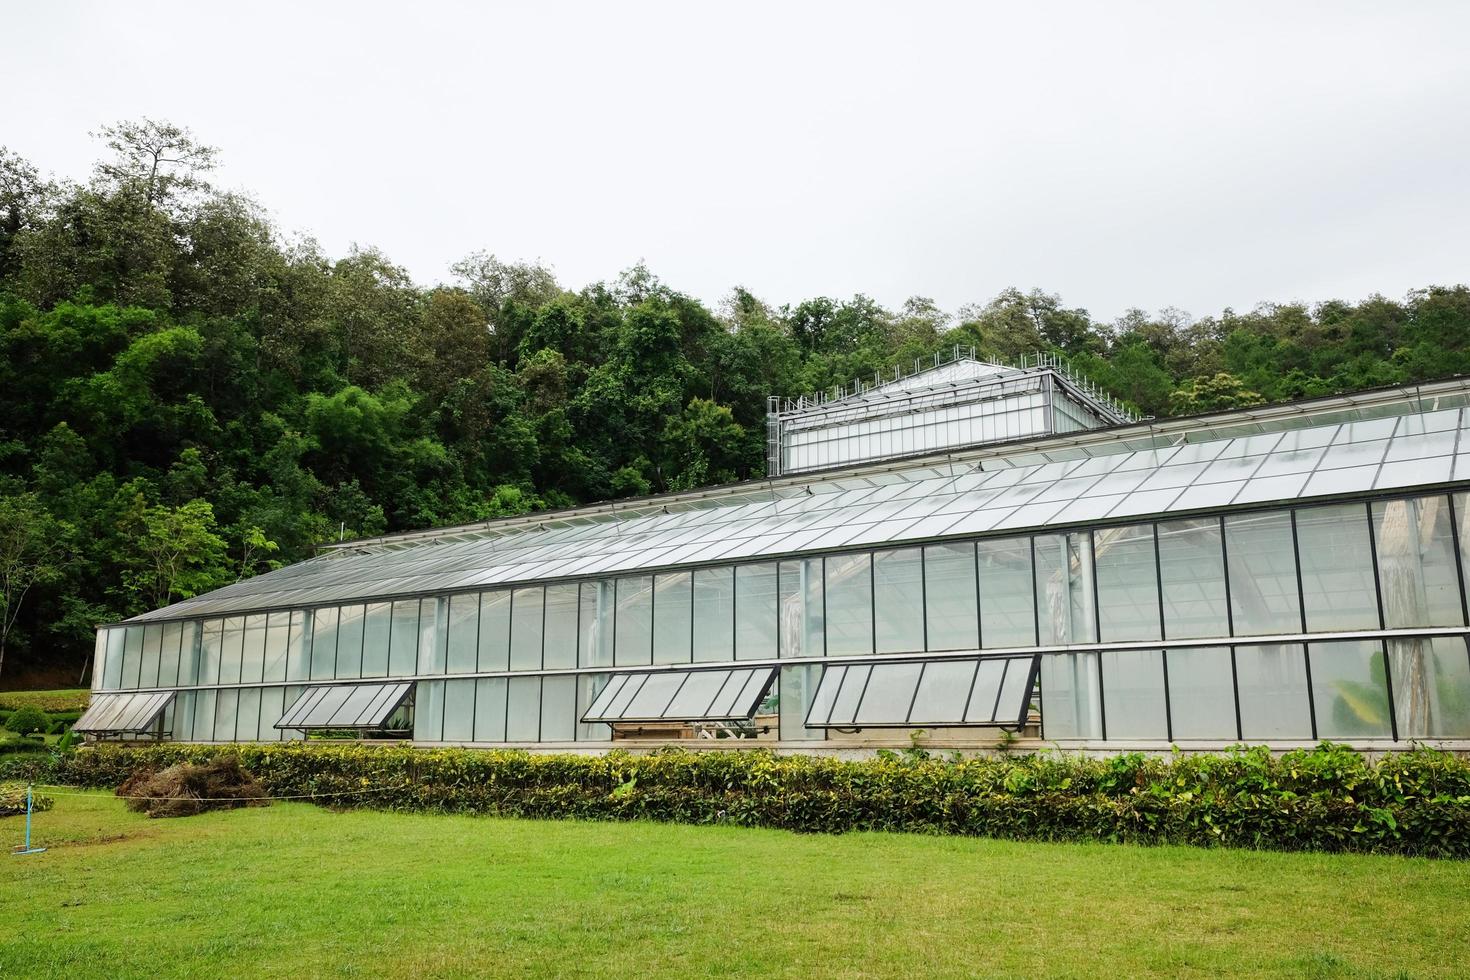 kas en serre Bij koningin sirikit botanisch tuin en arboretum, klimmer spoor voor studie over divers fabriek soorten. foto